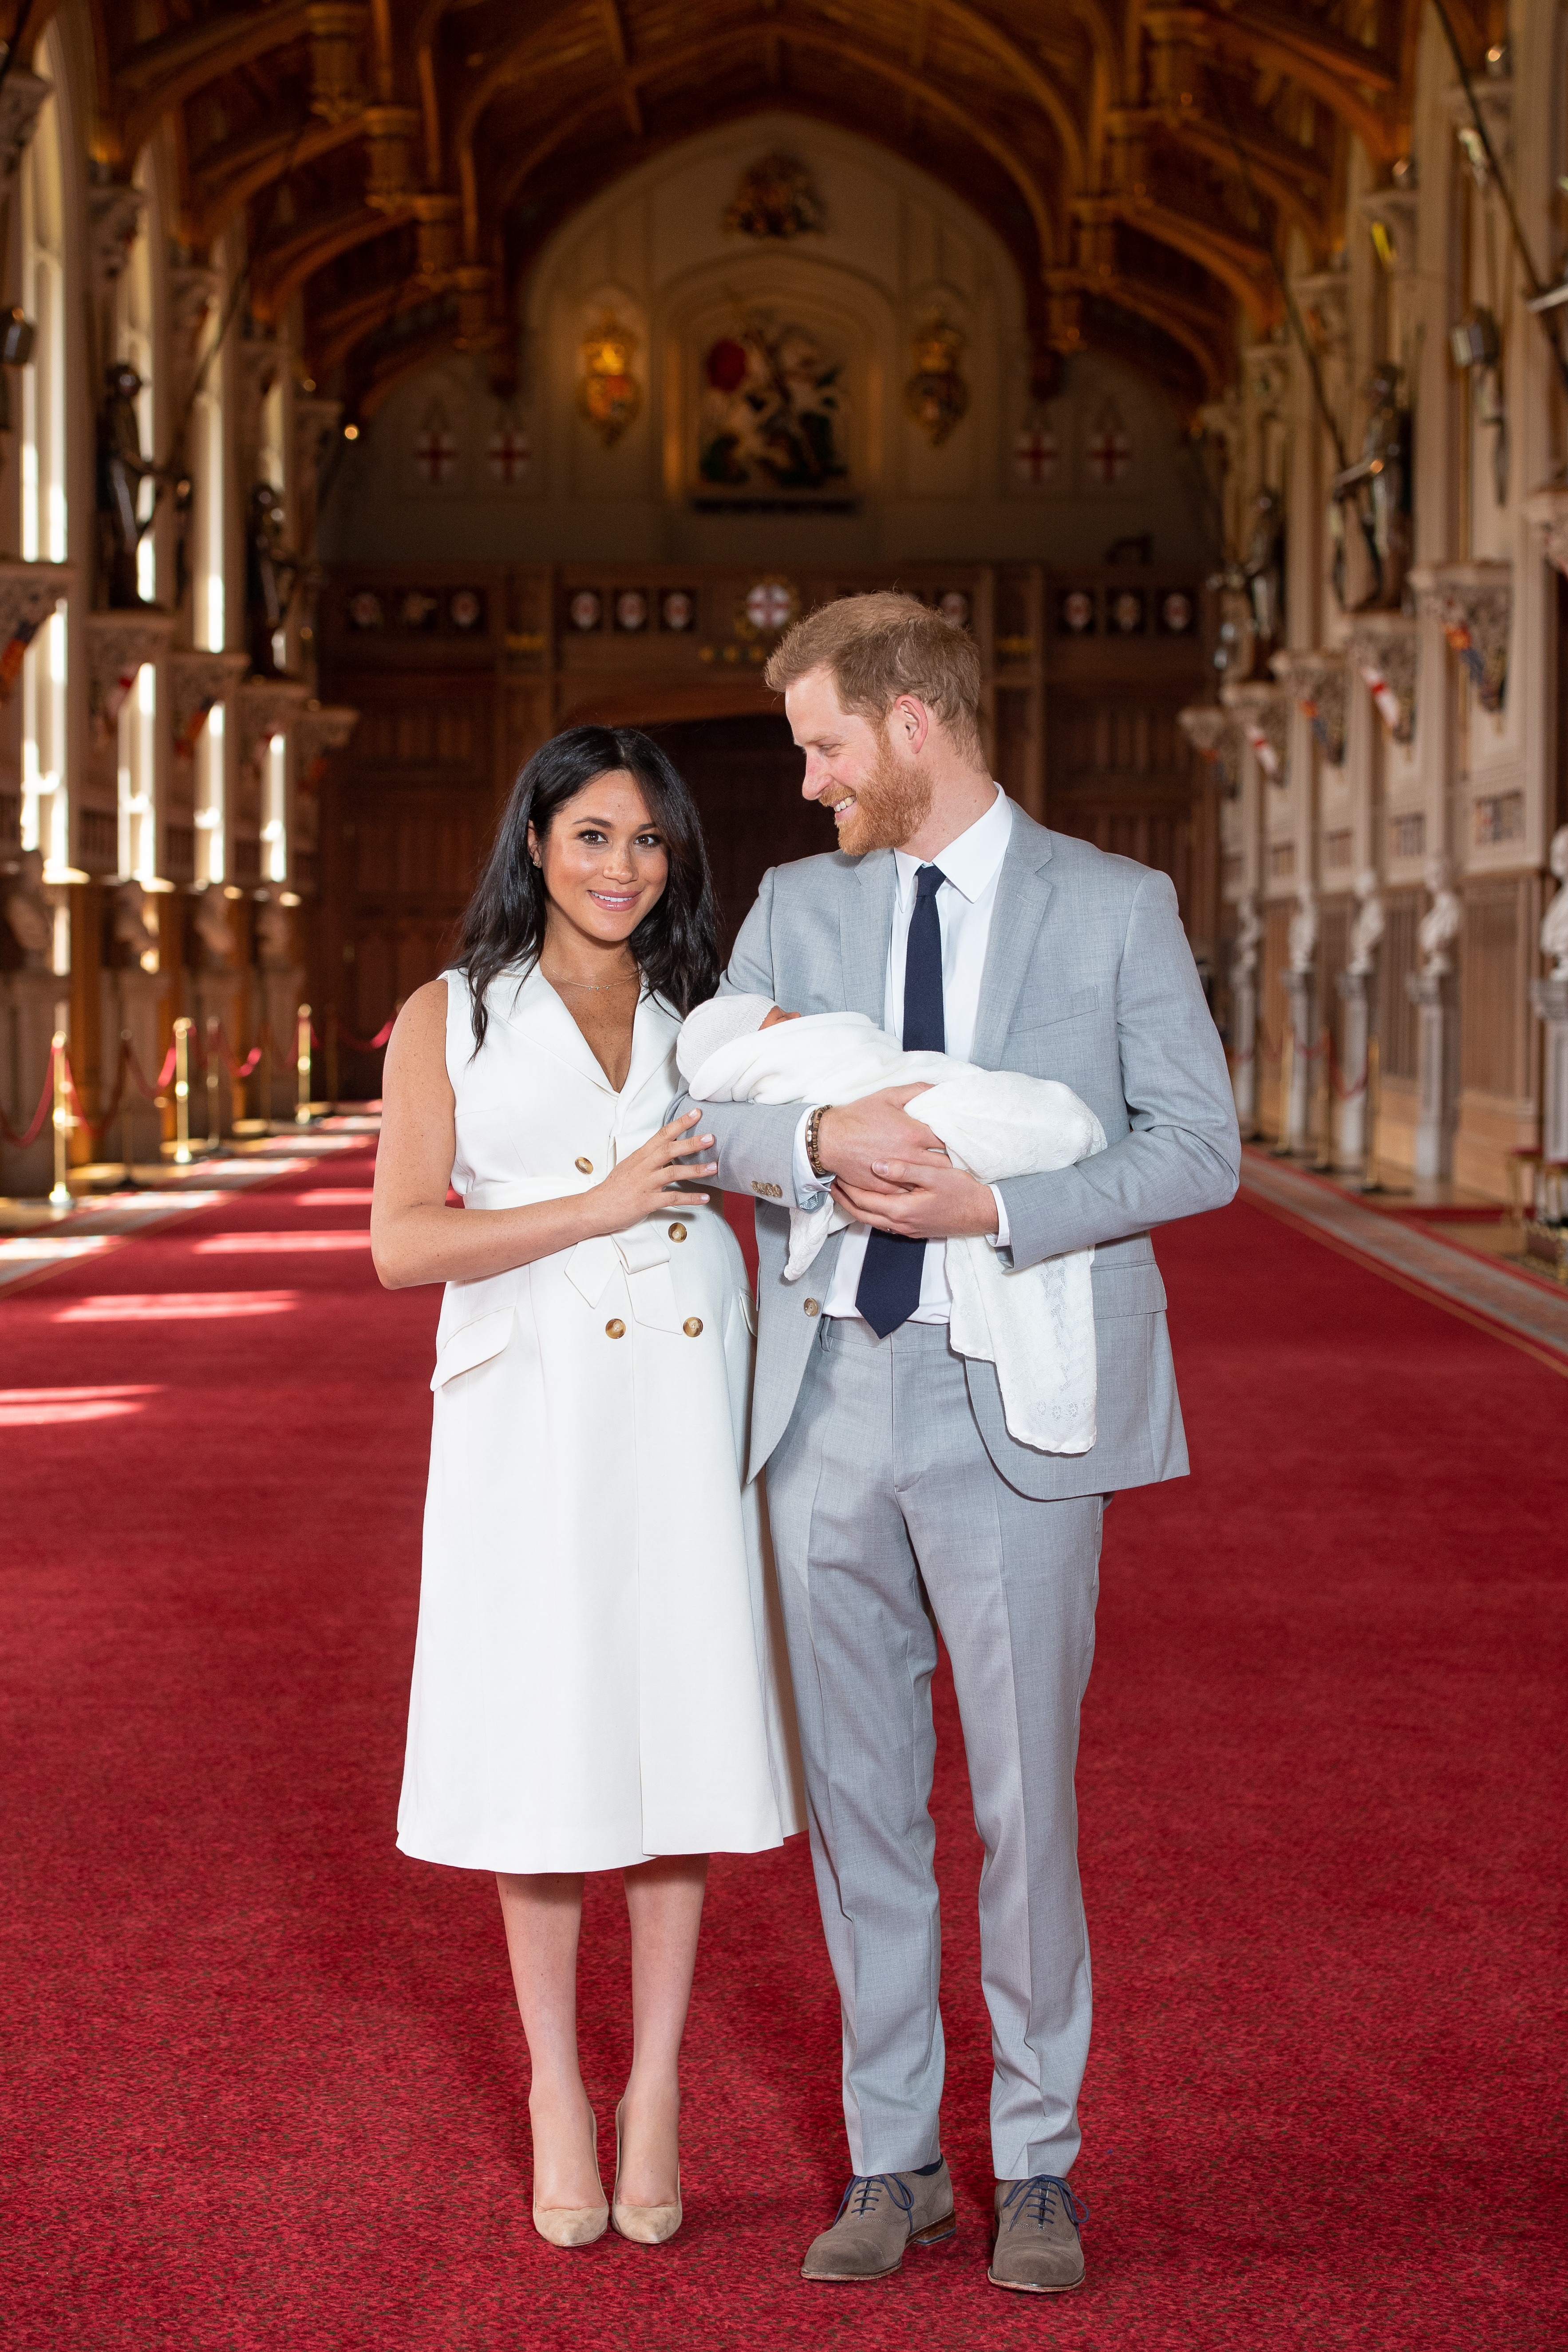 Херцогът и херцогинята на Съсекс най-сетне показаха своето първо дете в двореца Уиндзор. Херцогиня Маркъл роди в понеделник (6 май).